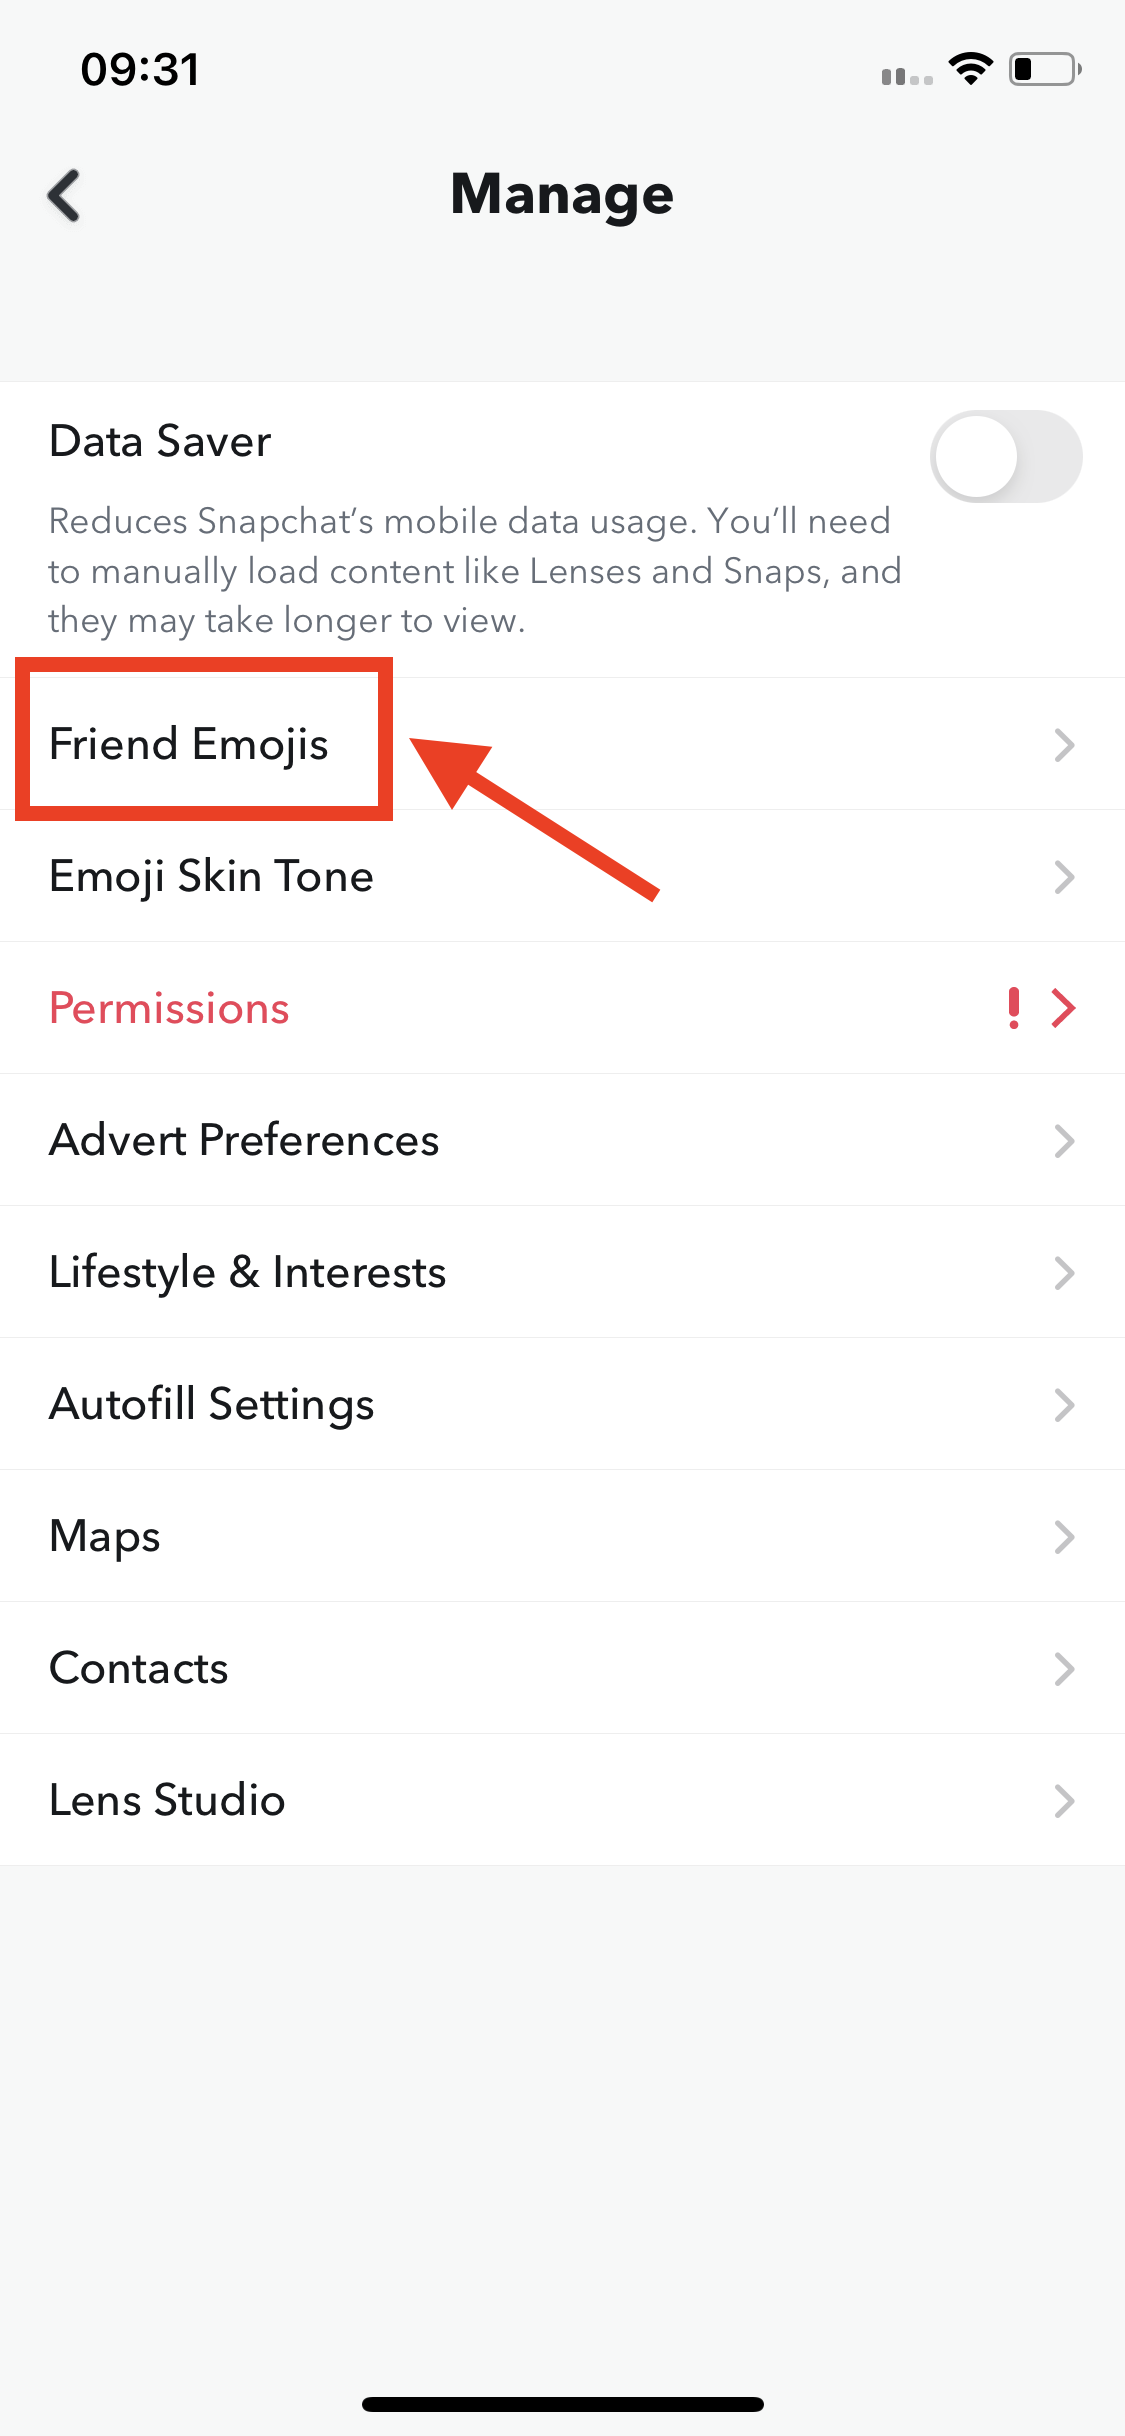 Tap on ‘Friend Emojis'